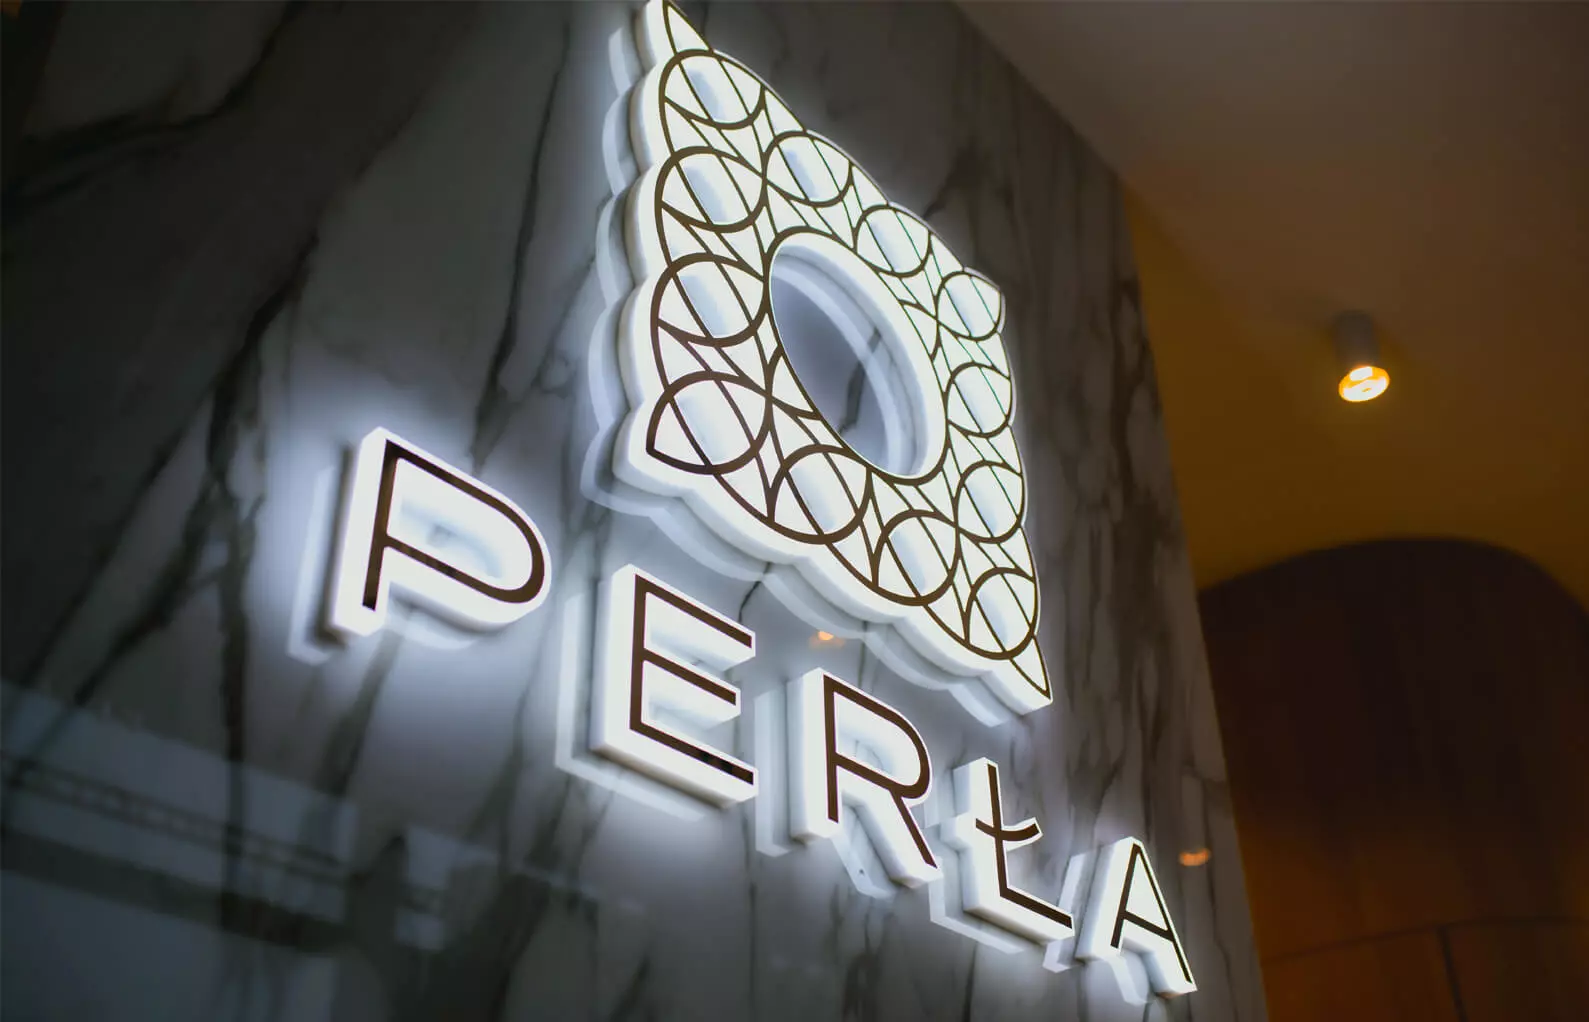 Perle - Logo illuminé avec lettres LED éclairées sur le côté